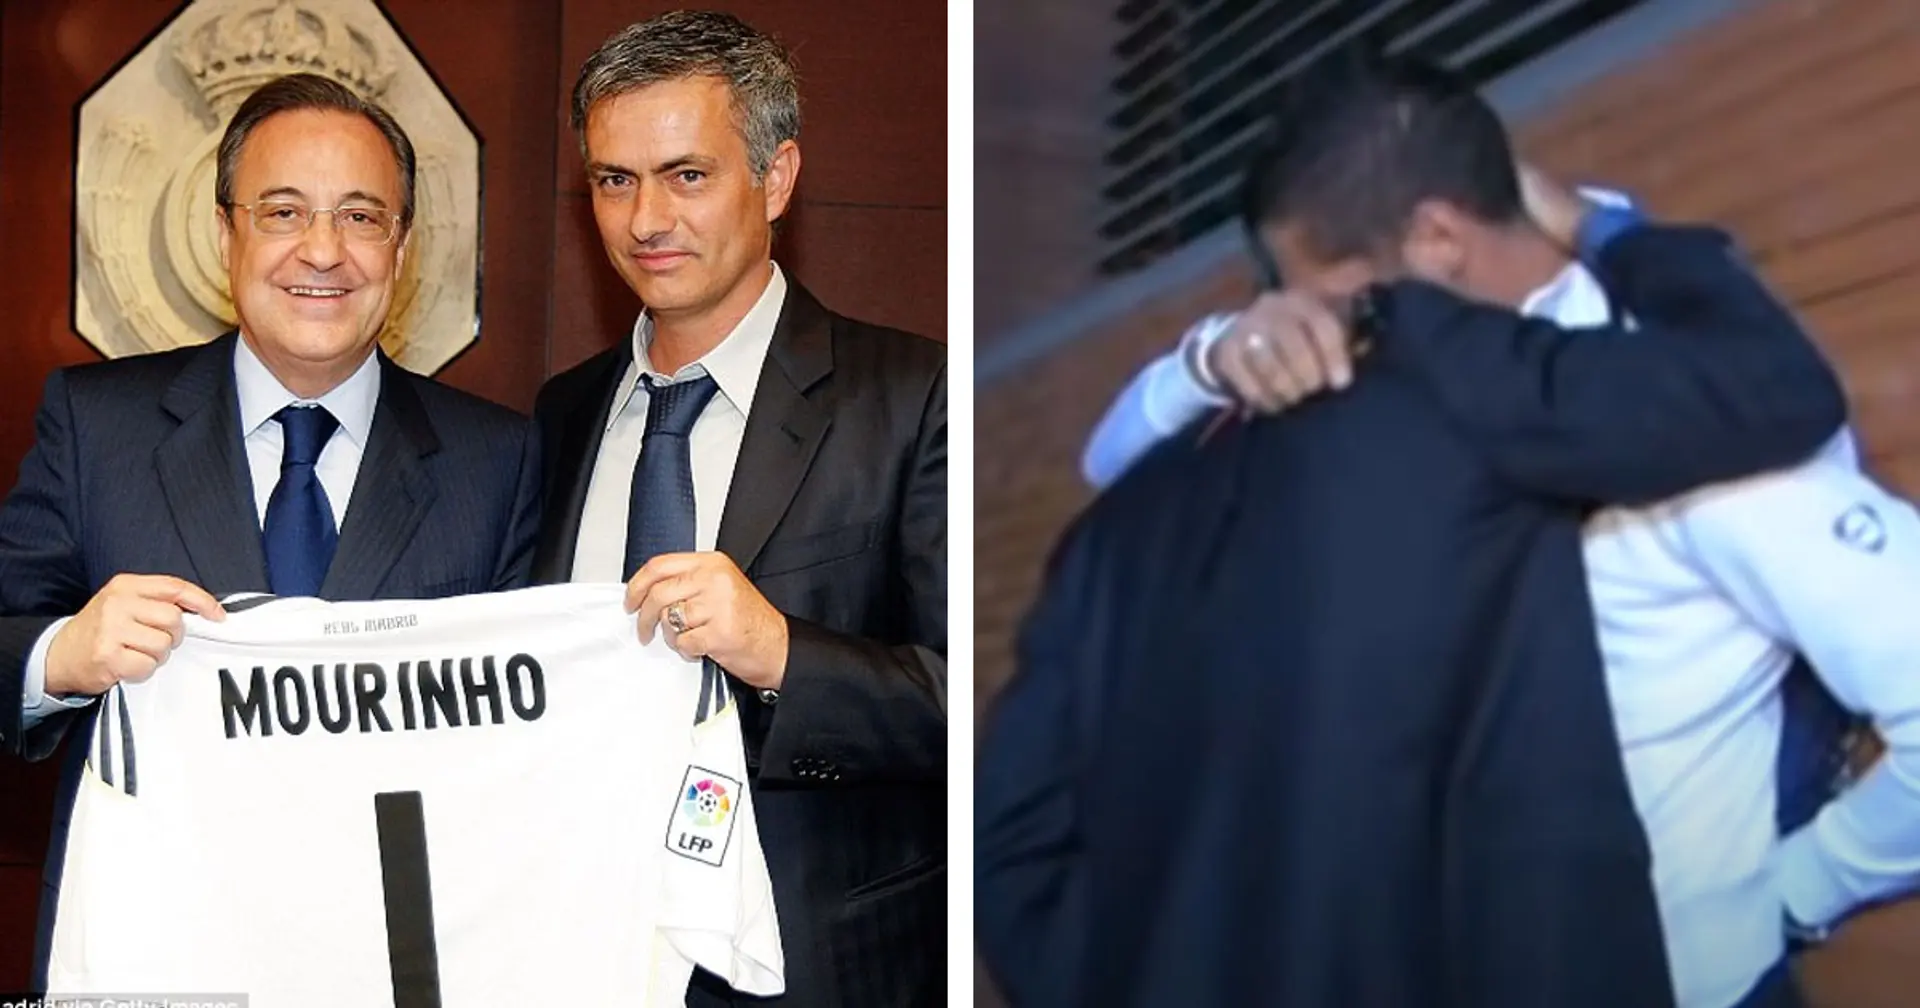 Mourinho rivela un retroscena sulla fuga da Madrid dopo la vittoria della Champions con l'Inter